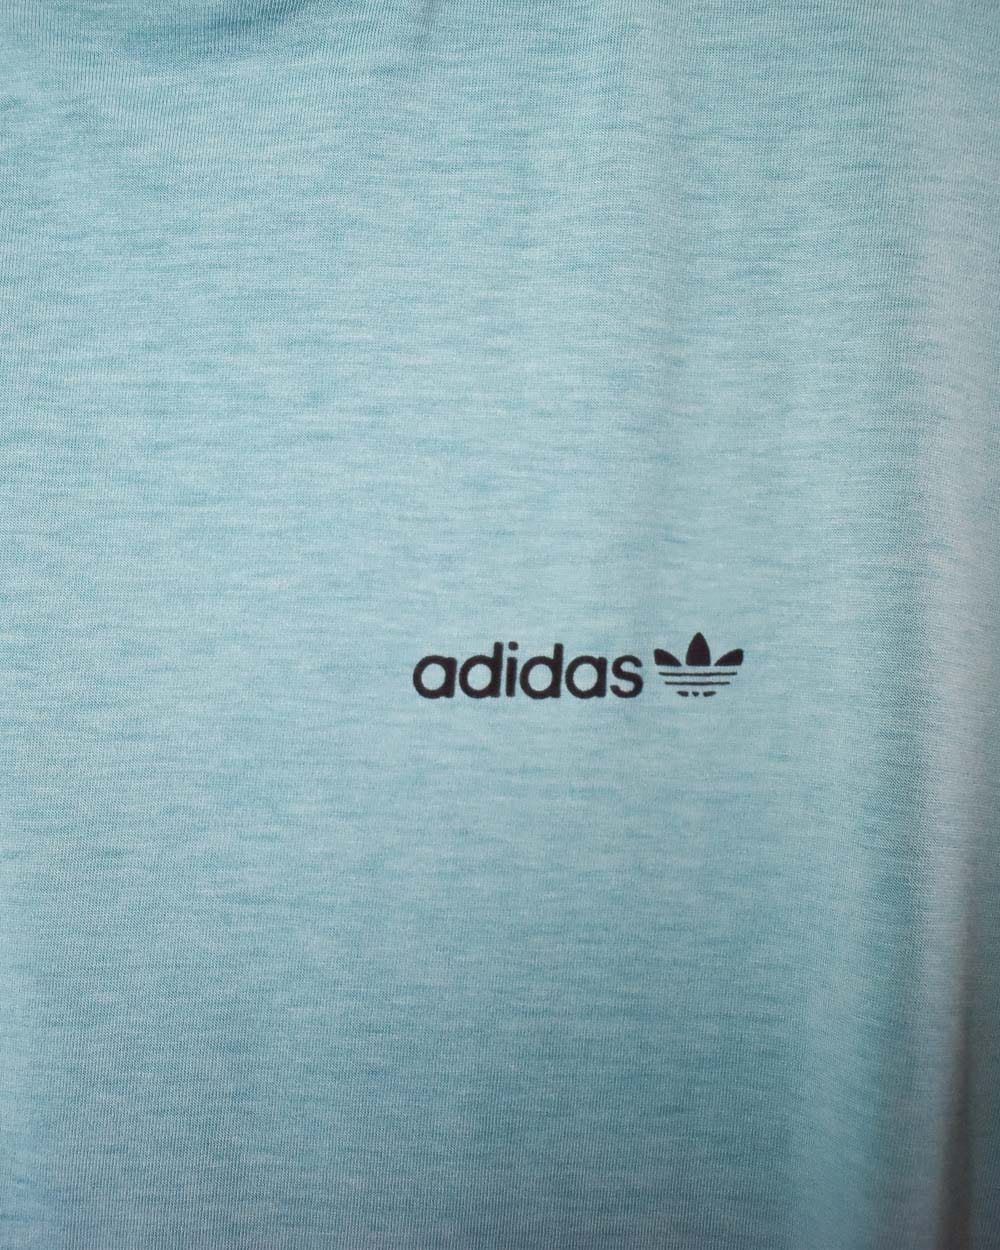 Baby Adidas T-Shirt - Medium